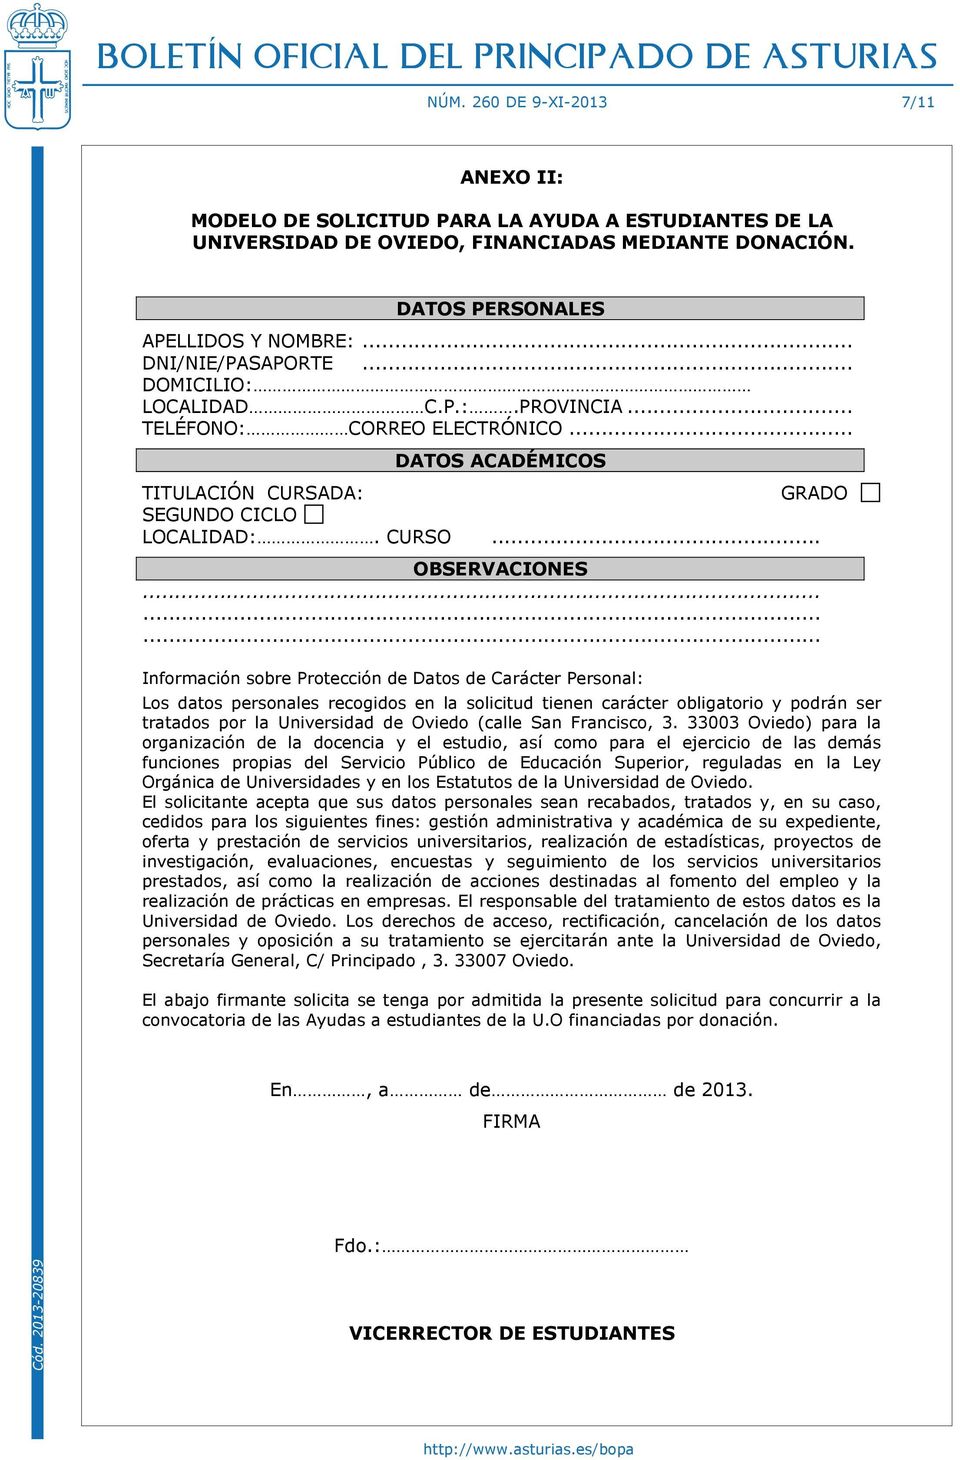 ........ Información sobre Protección de Datos de Carácter Personal: Los datos personales recogidos en la solicitud tienen carácter obligatorio y podrán ser tratados por la Universidad de Oviedo